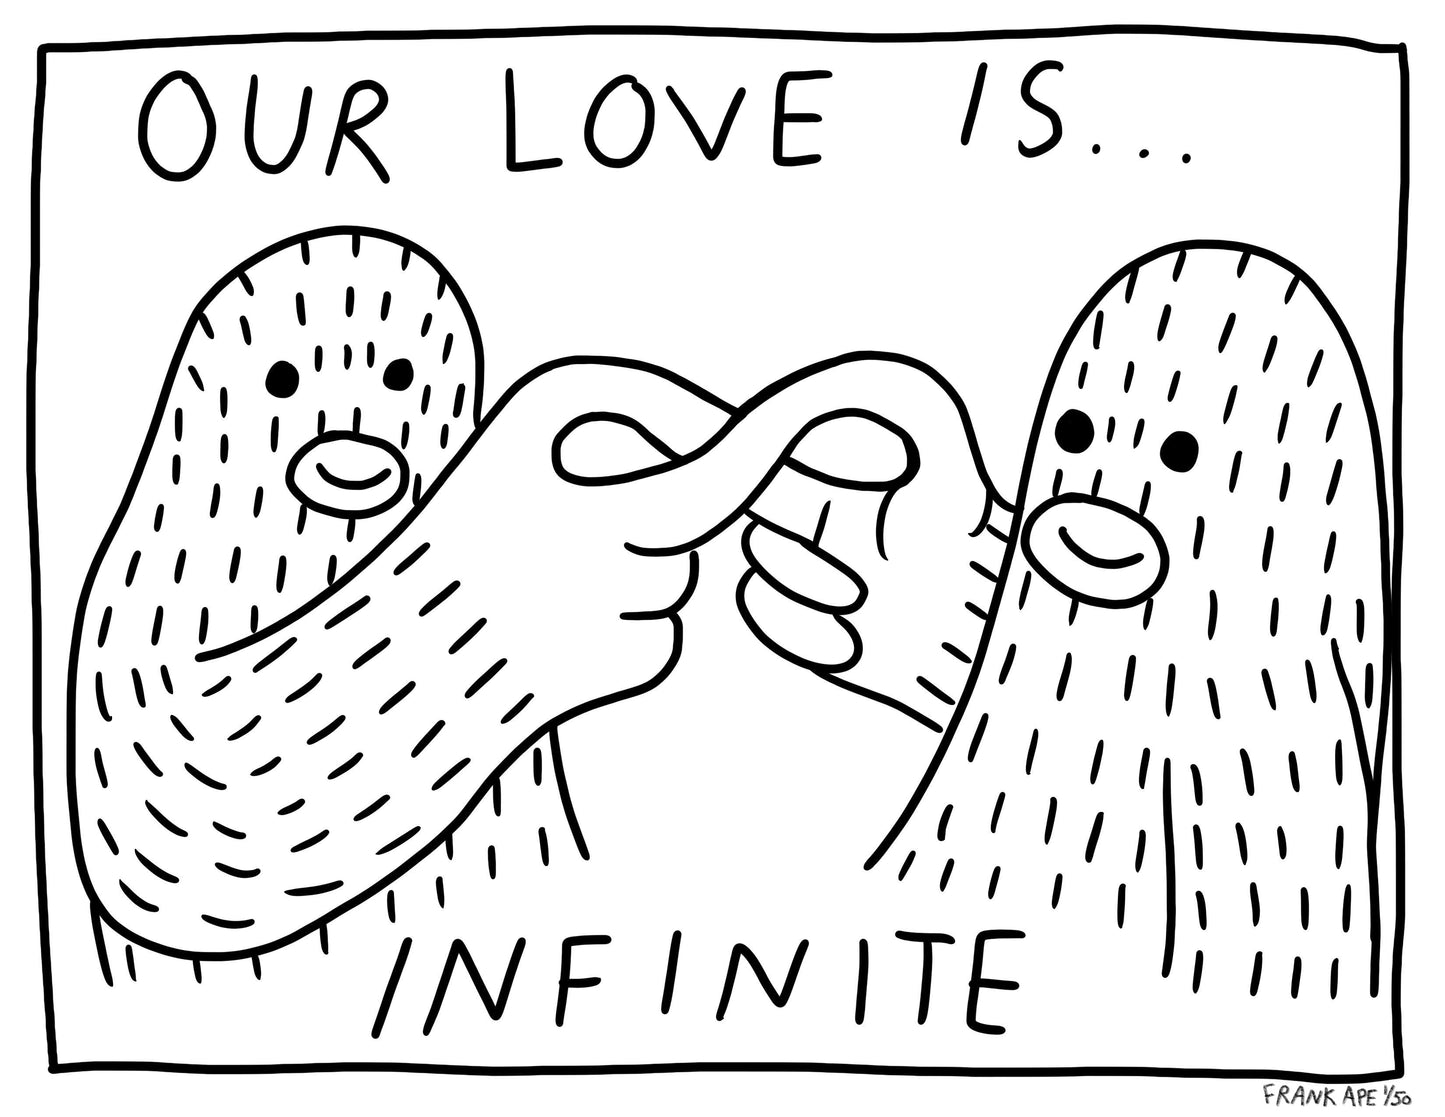 #75 - Infinite Love